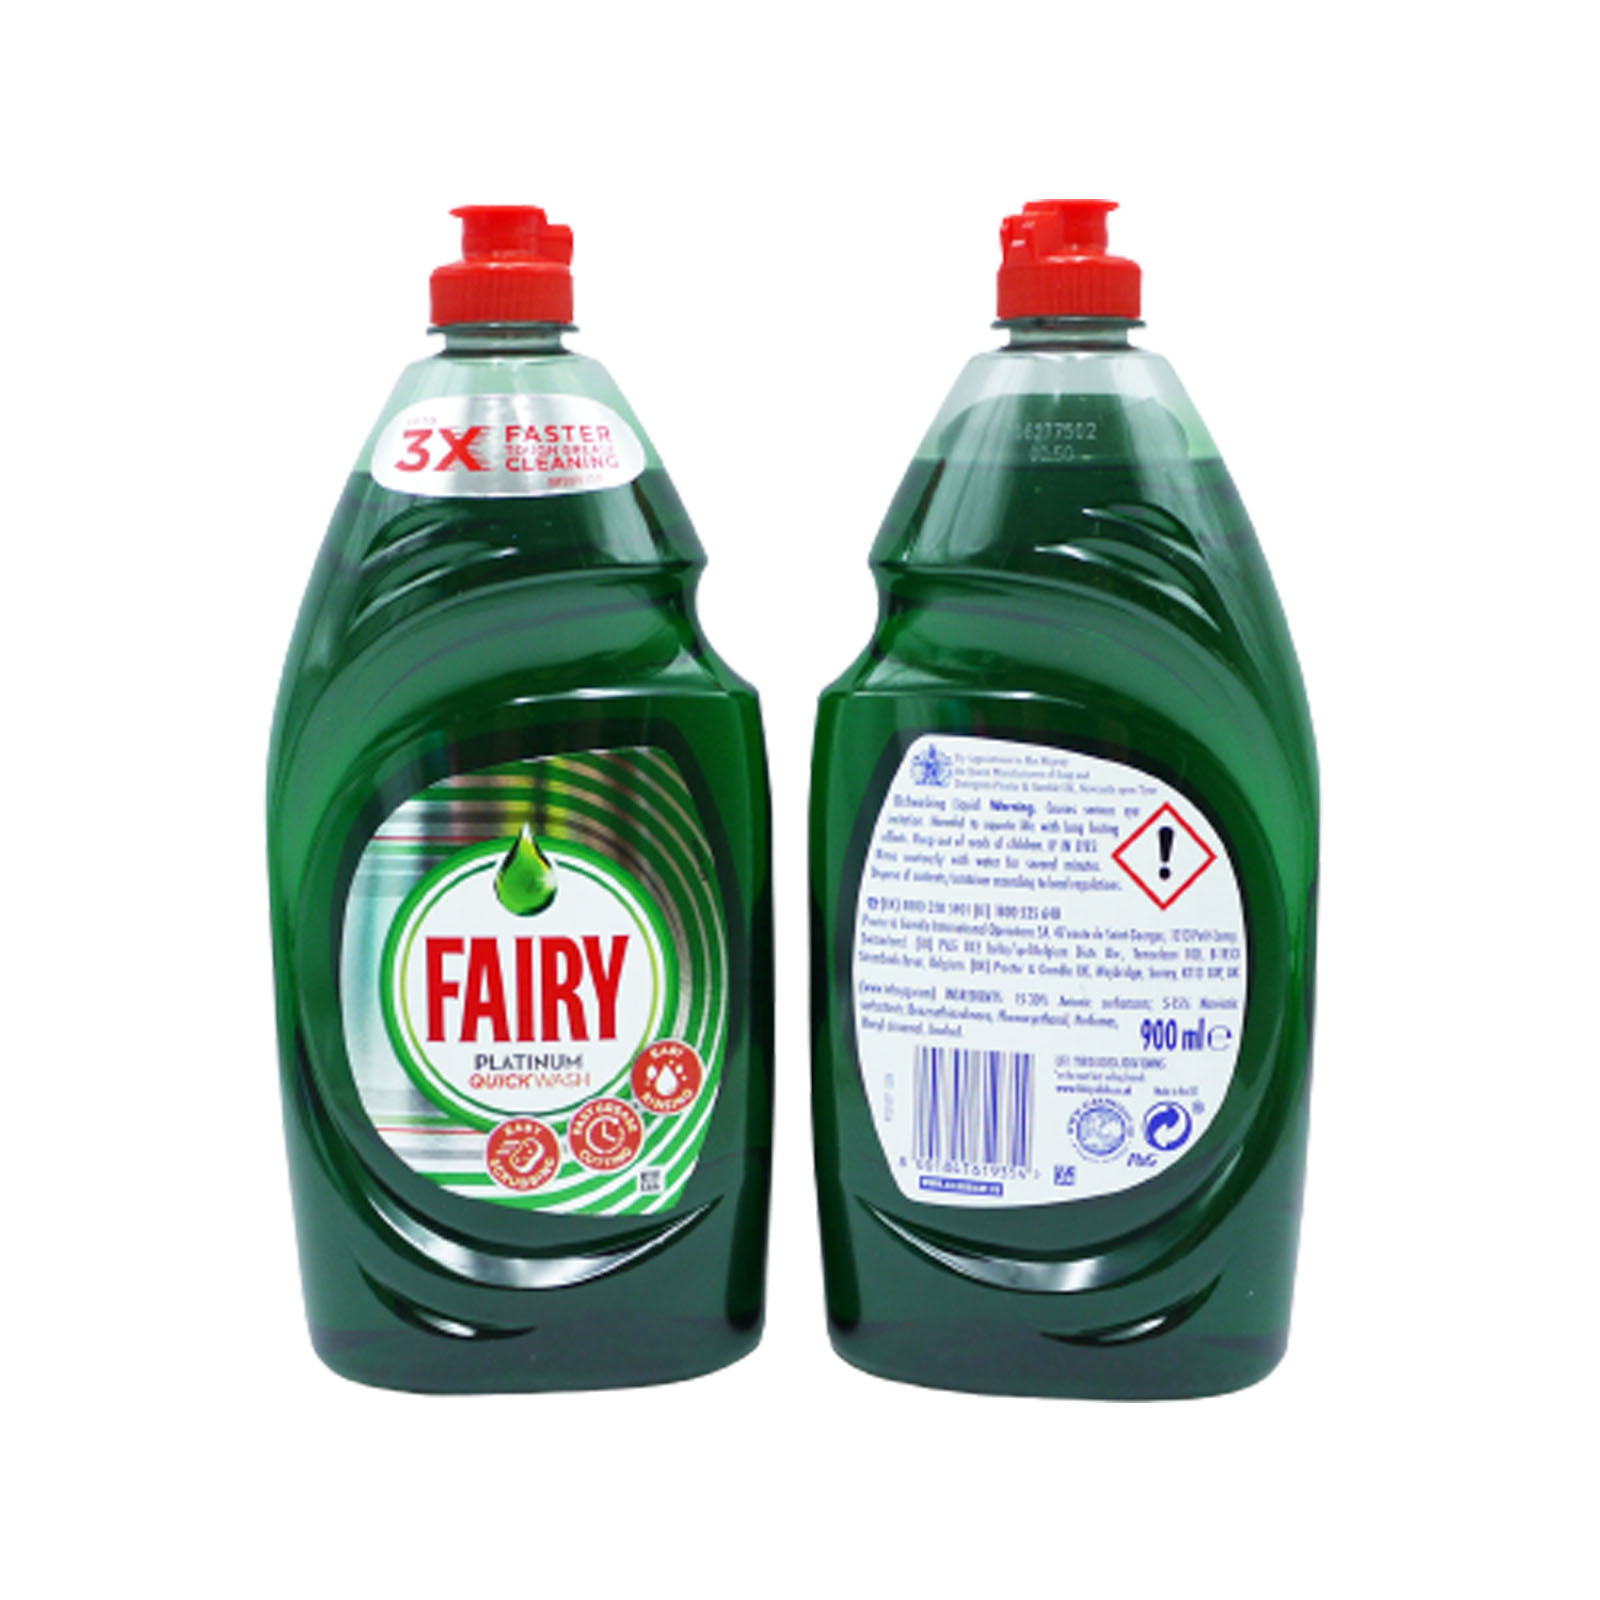 Fairy HDW Platinum Original Washing Up Liquid 900ml 